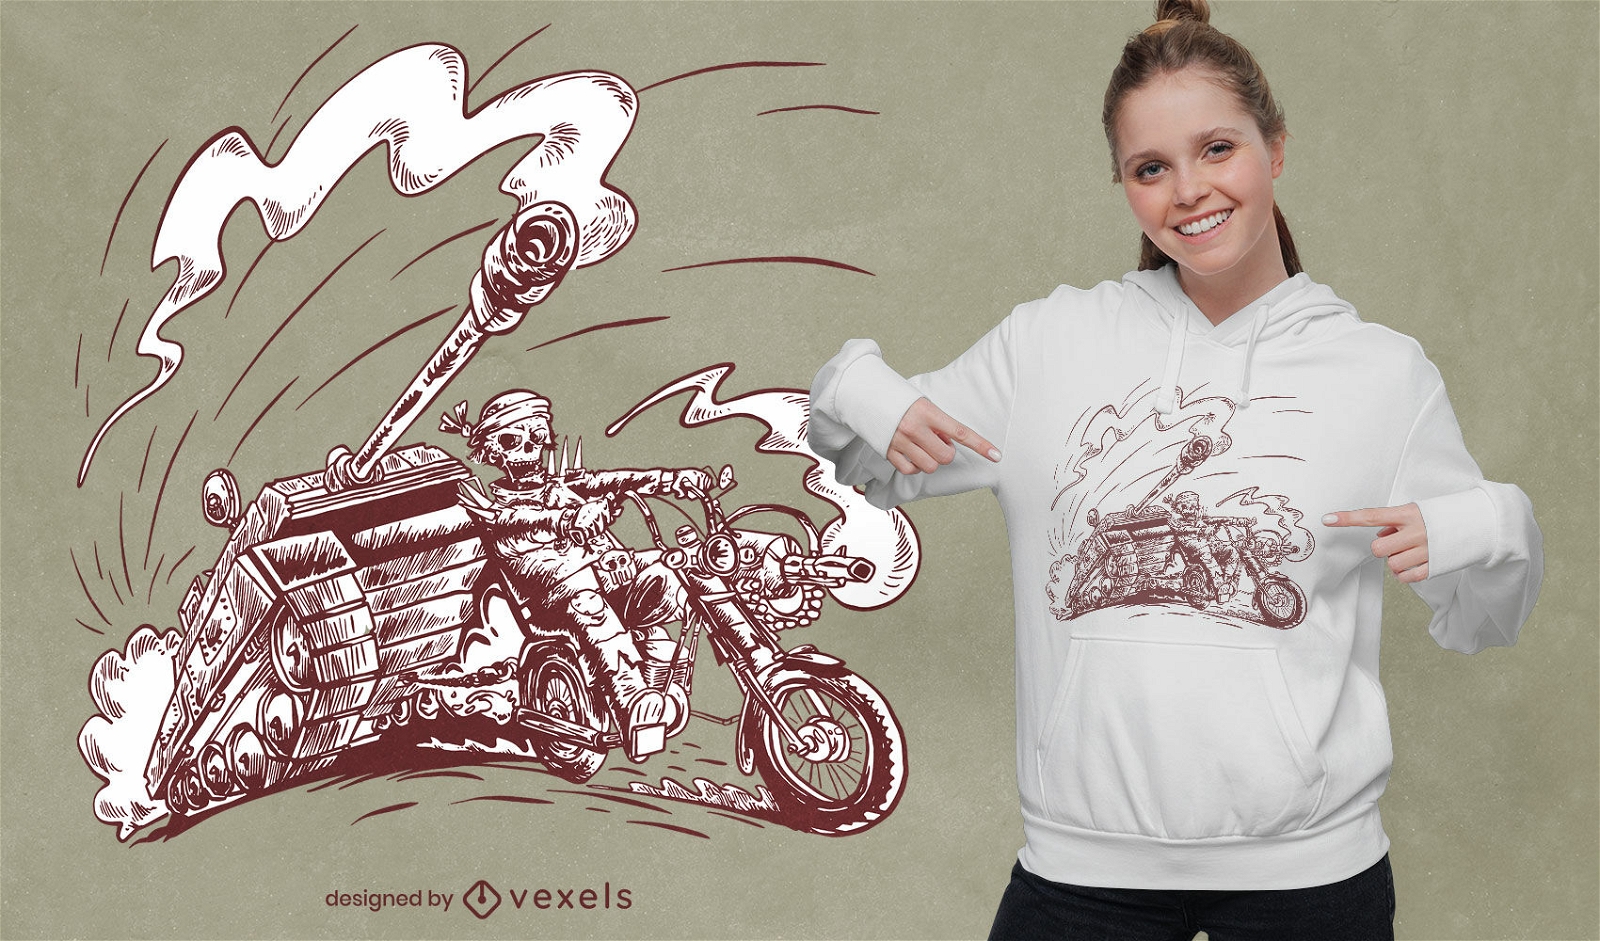 Esqueleto en dise?o de camiseta de moto.